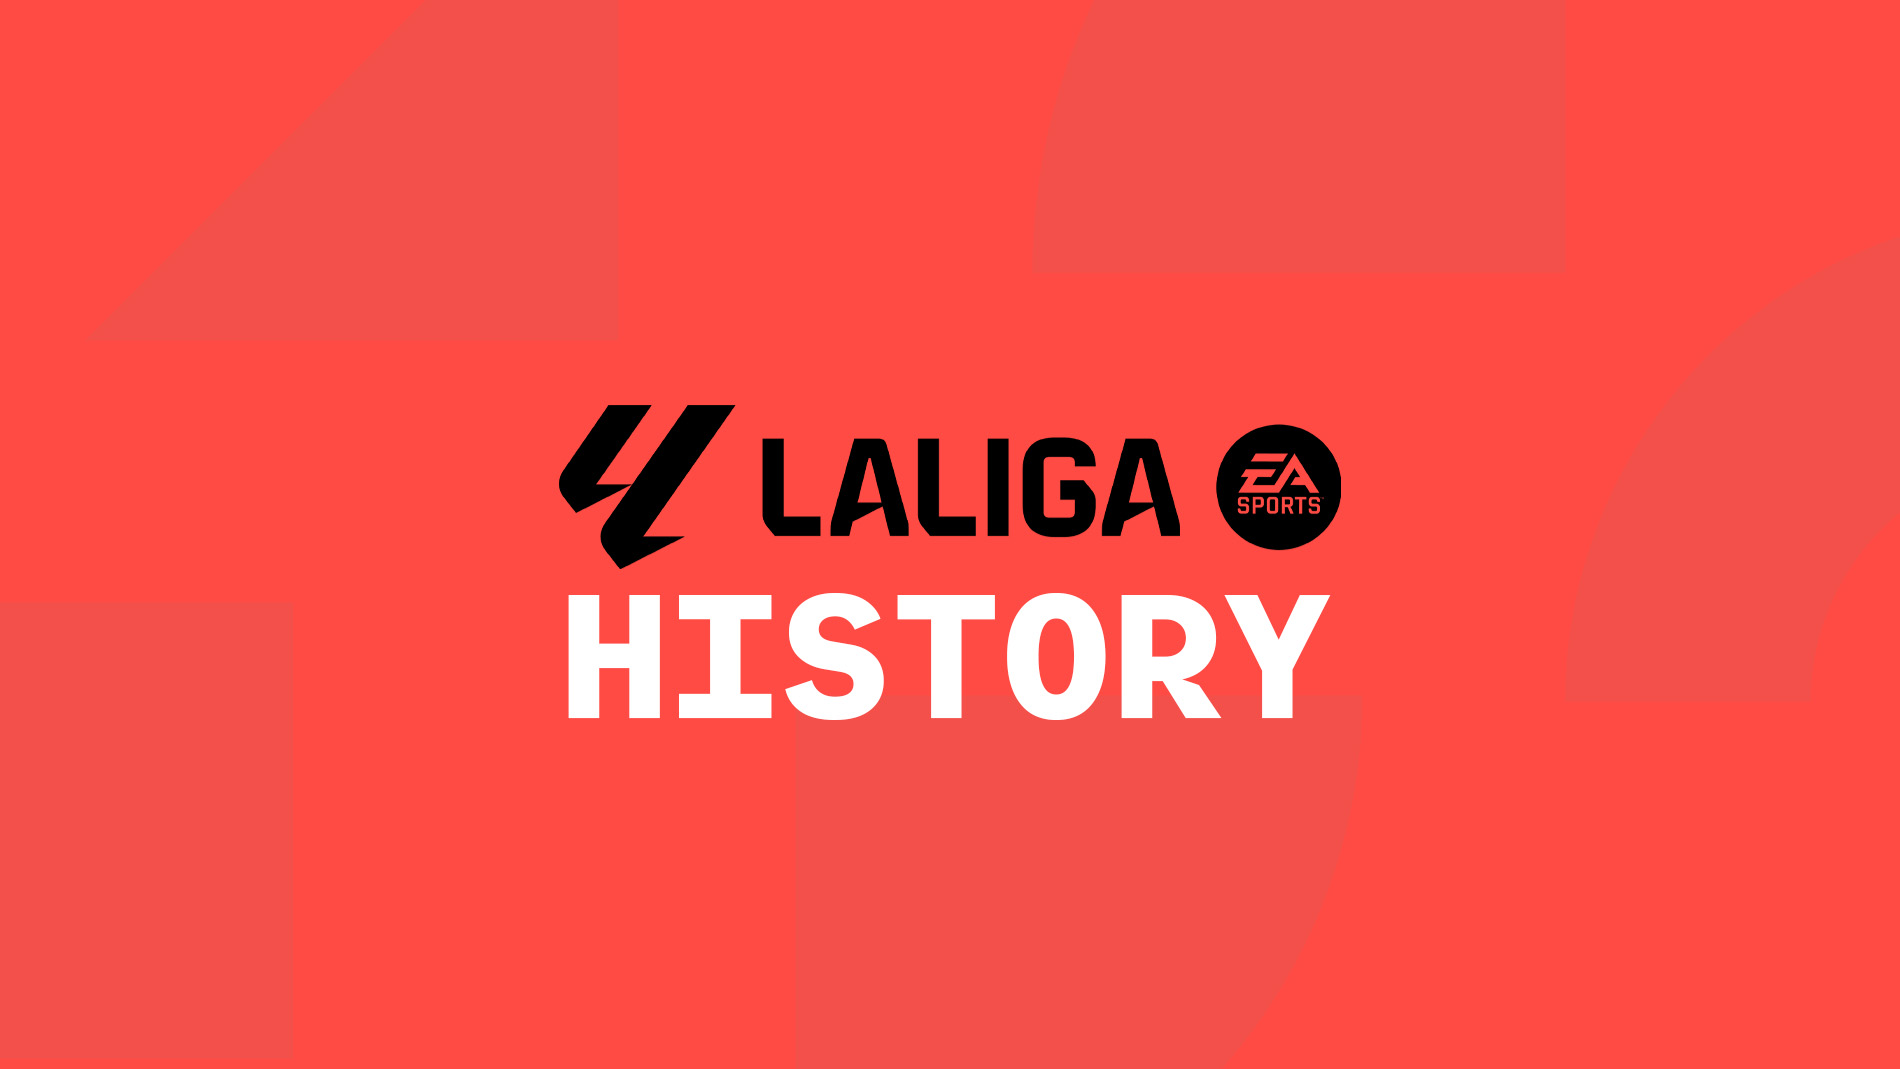 La Liga History